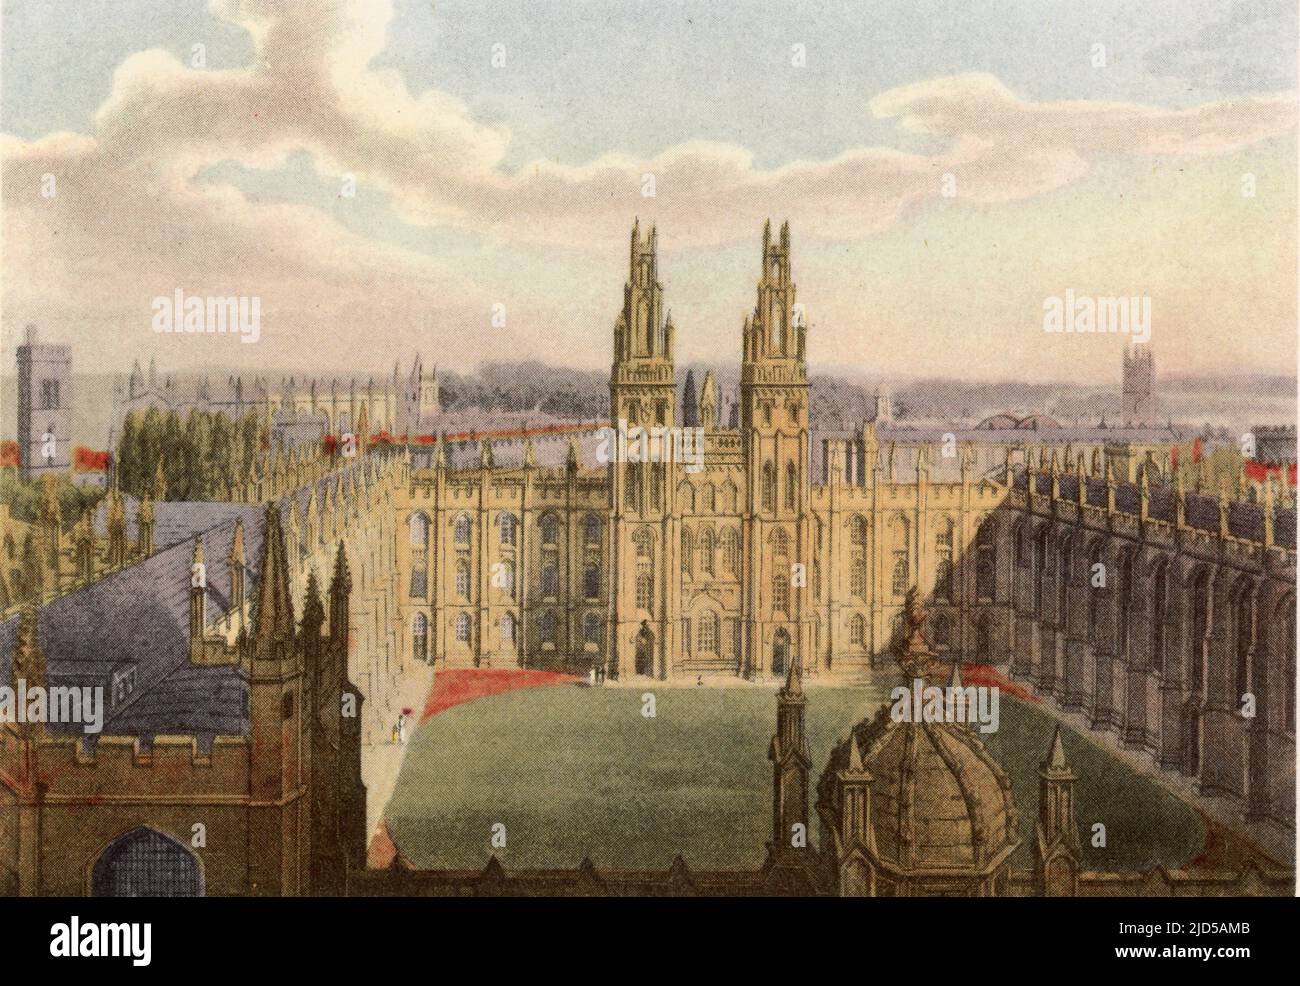 All Souls College, 1814. All Souls College est un collège de l'Université d'Oxford en Angleterre. Un imprimé de « A History of the University of Oxford, ITS Colleges, Halls, and public Buildings », publié par Rudolph Ackermann, 1814. Ilustrated par Augustus Pugin, F. Mackenzie et d'autres. Banque D'Images